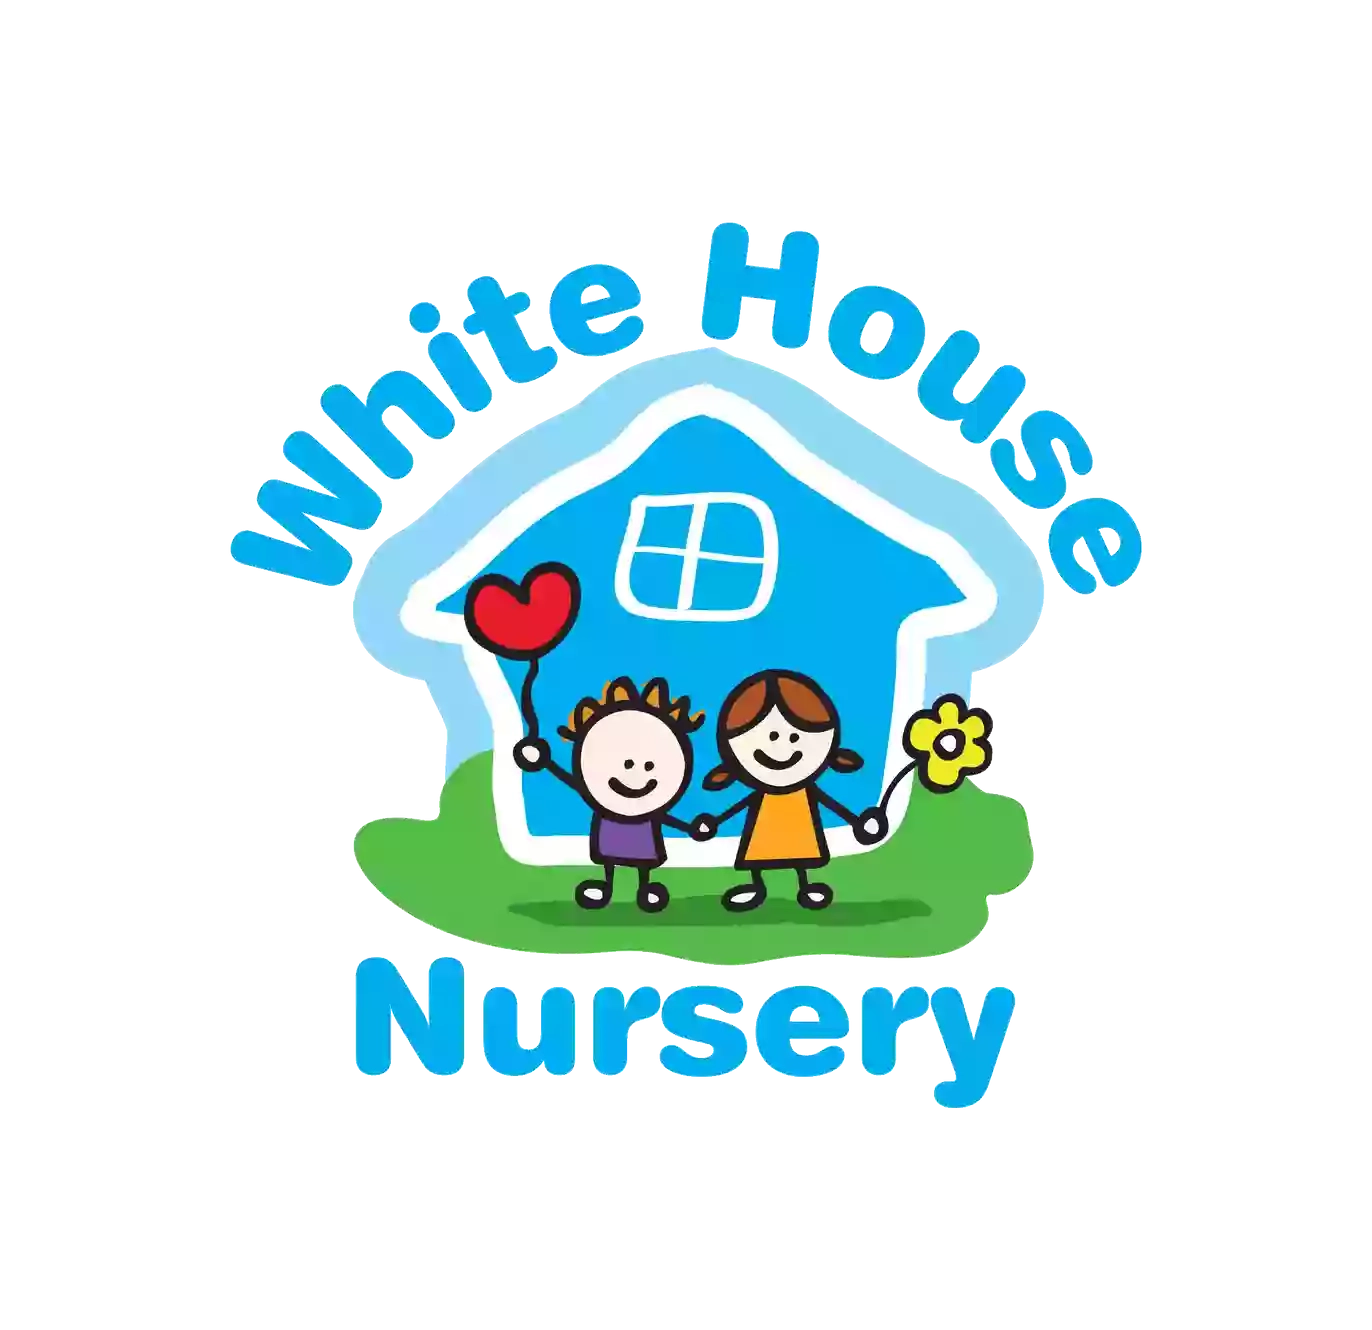 White House Nursery Alvaston